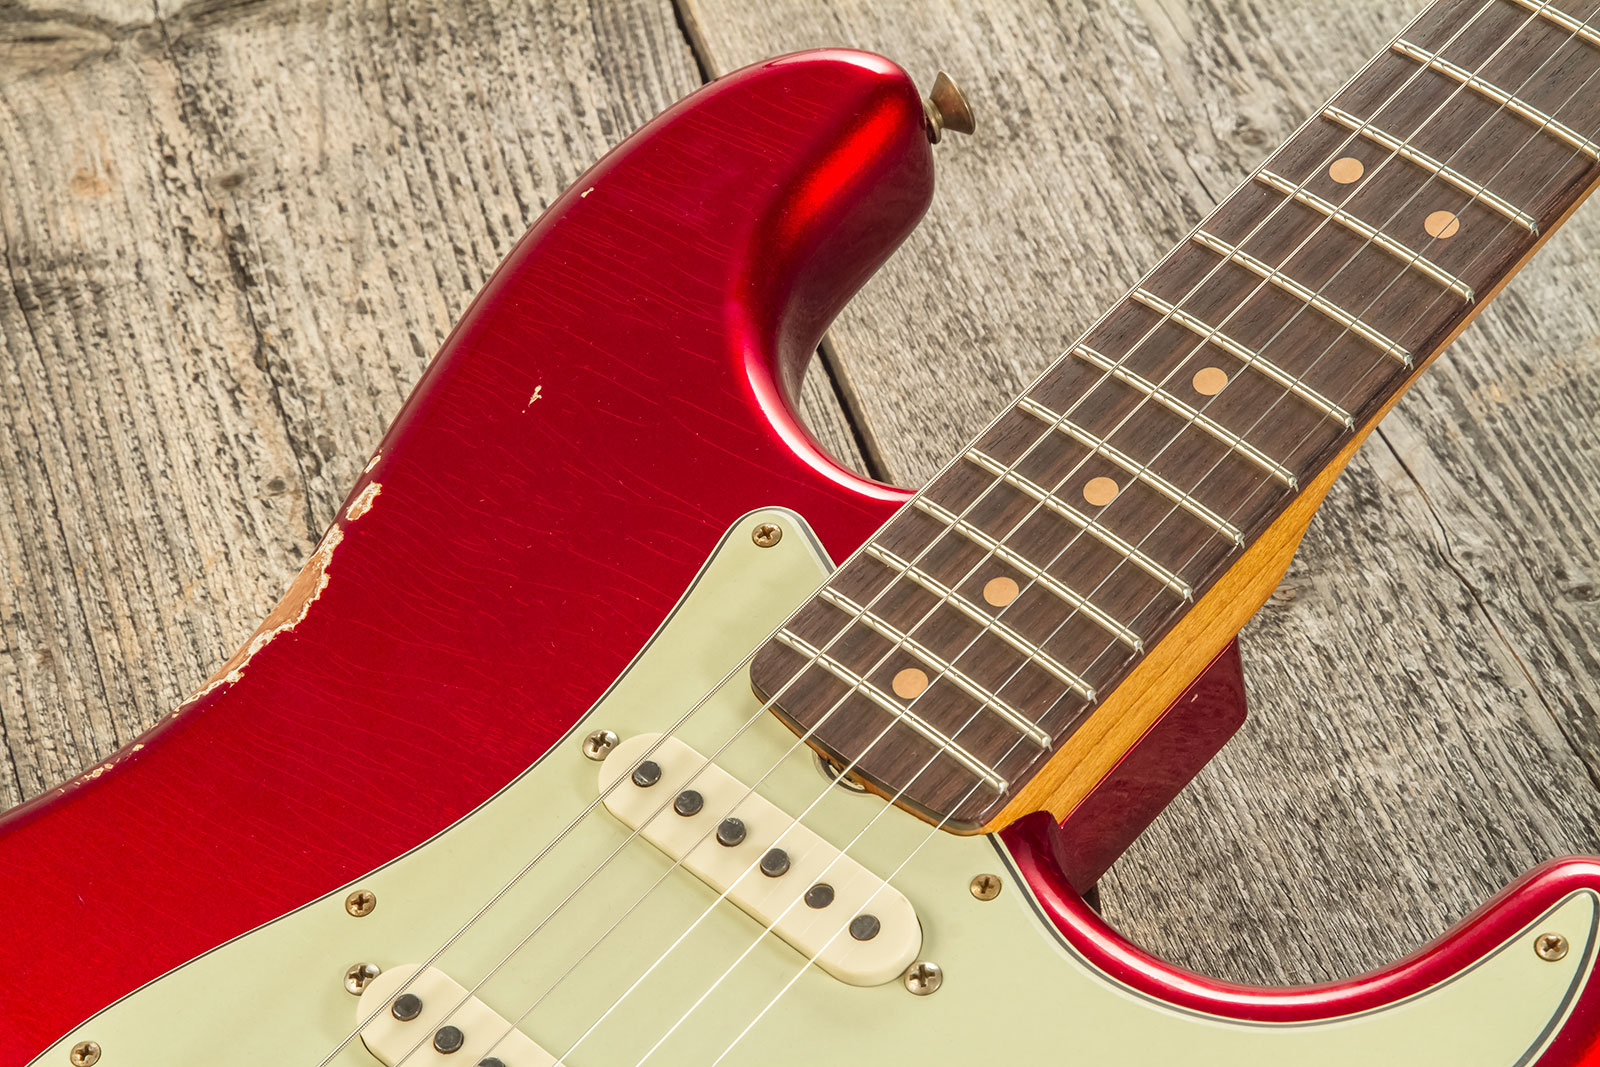 Fender Custom Shop Strat 1963 3s Trem Rw #cz579406 - Relic Aged Candy Apple Red - Elektrische gitaar in Str-vorm - Variation 3